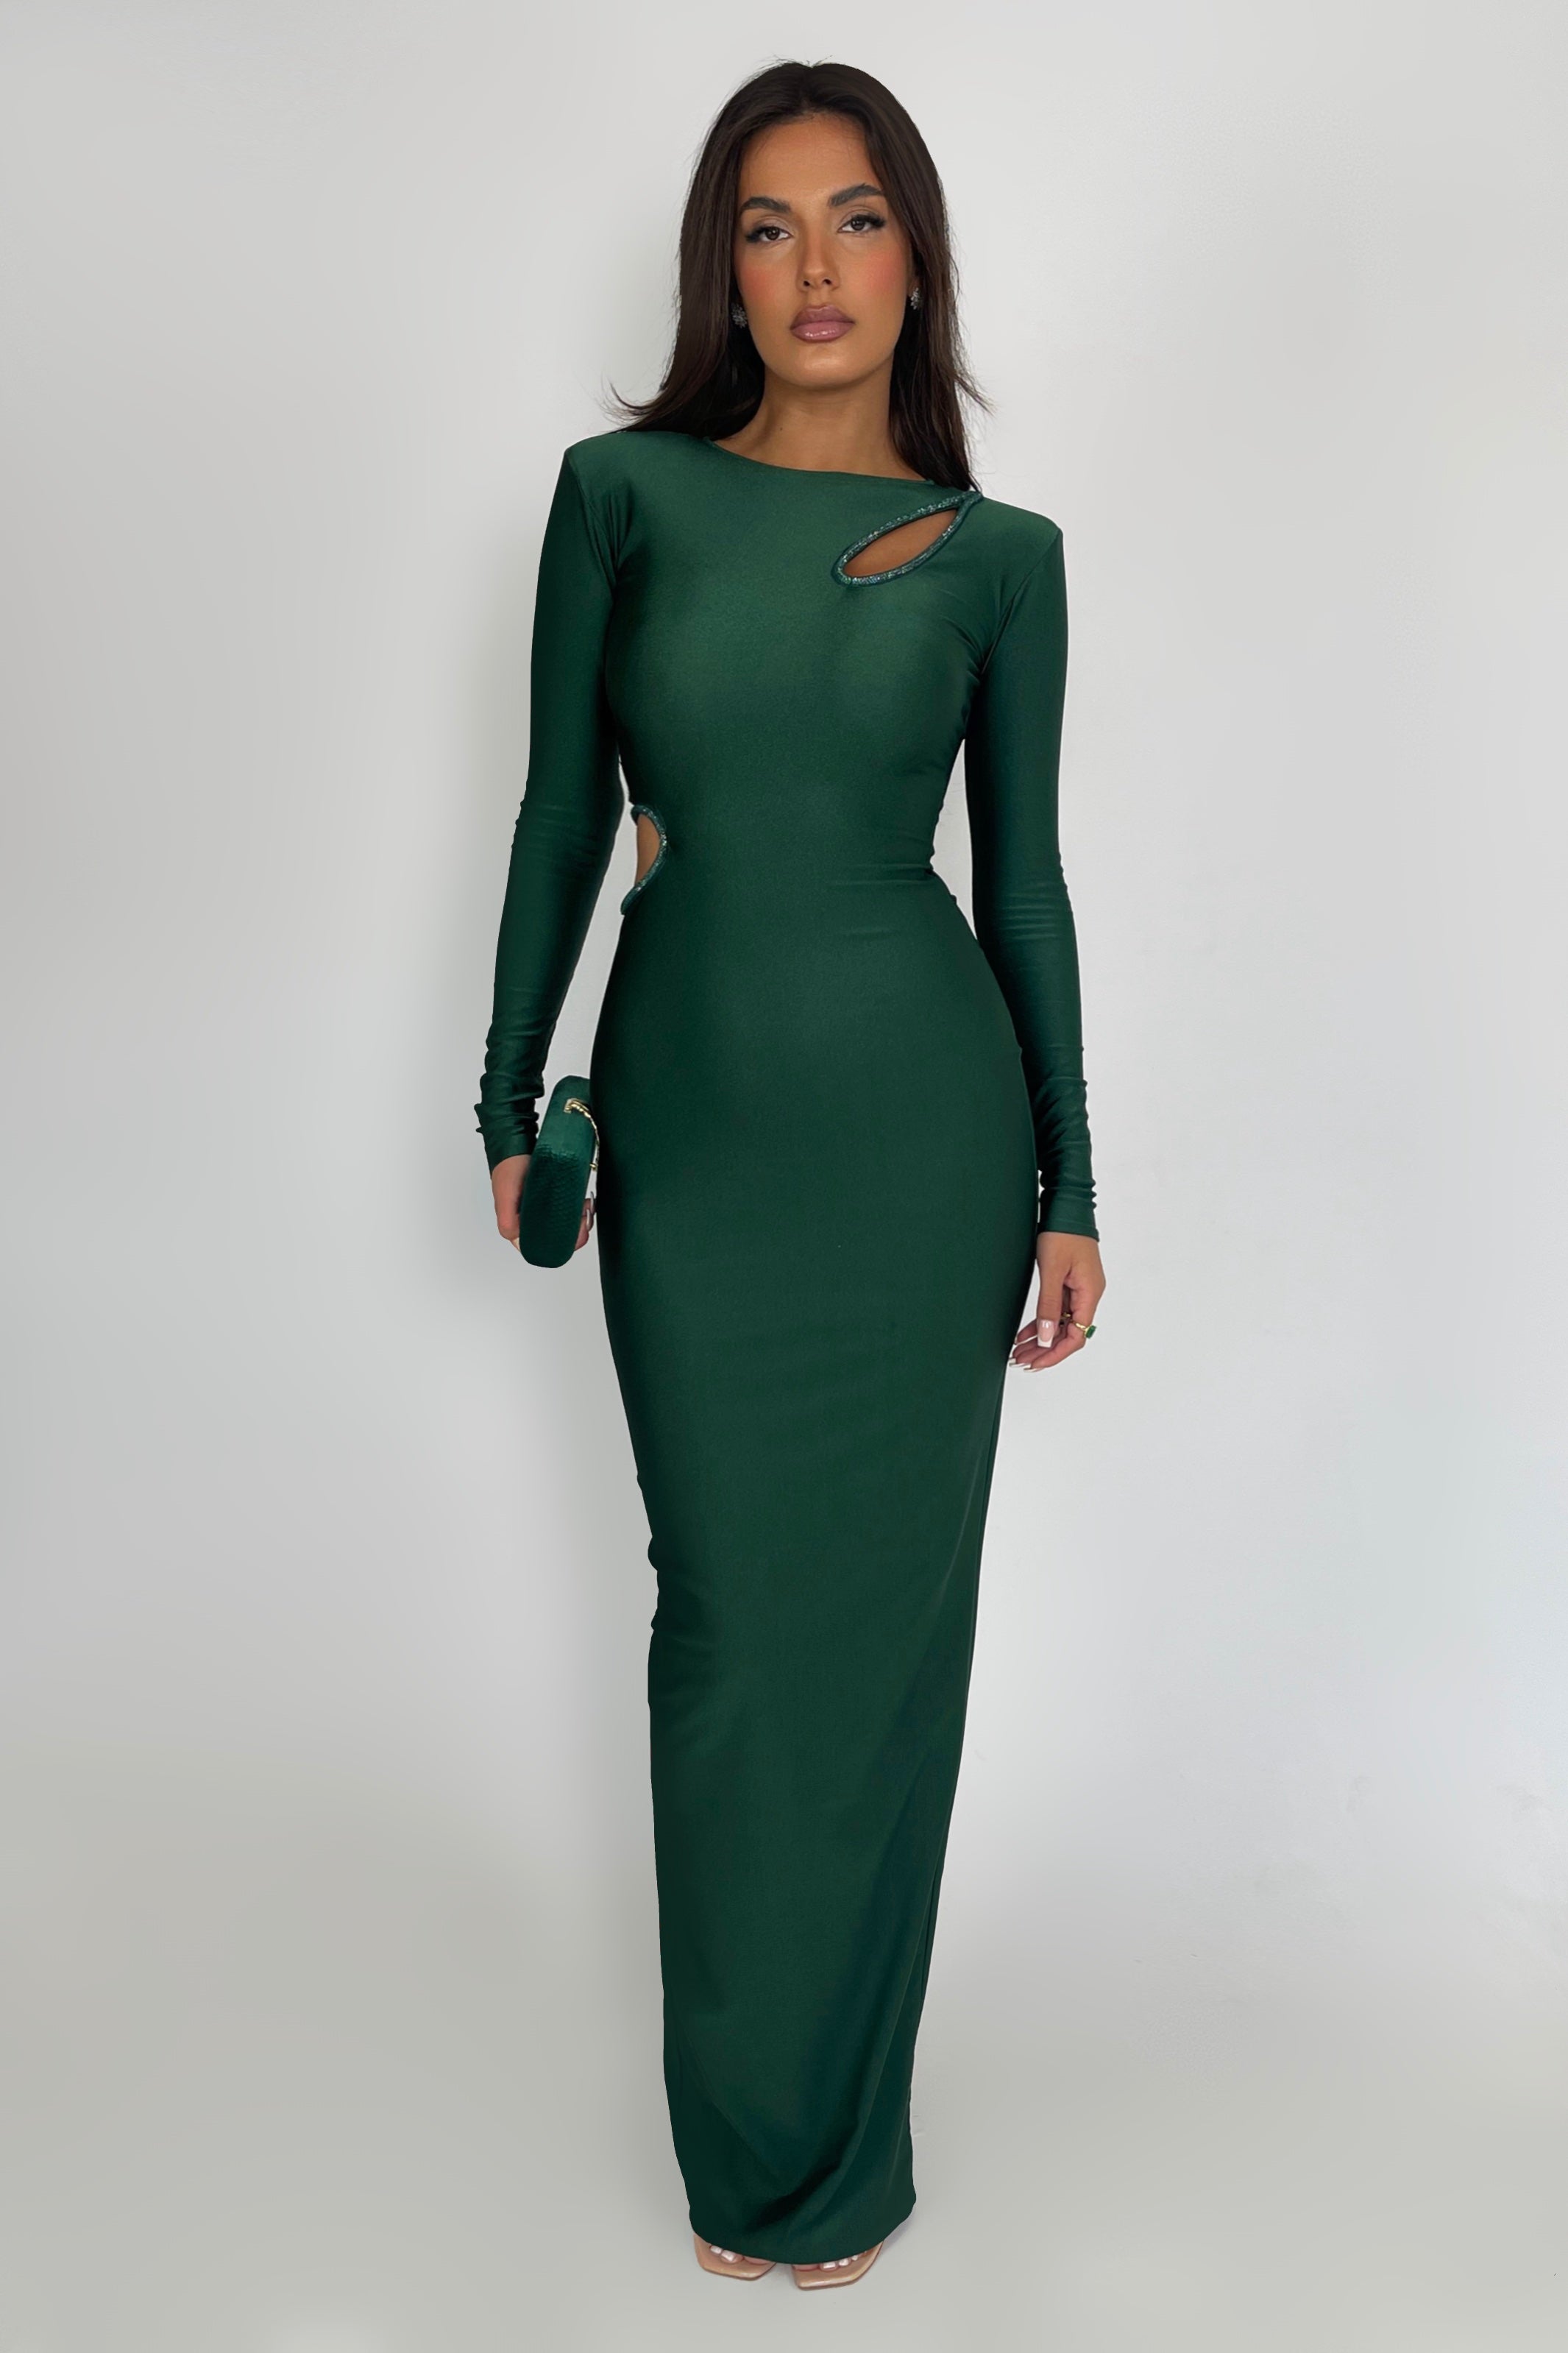 Noelle Emerald Dress